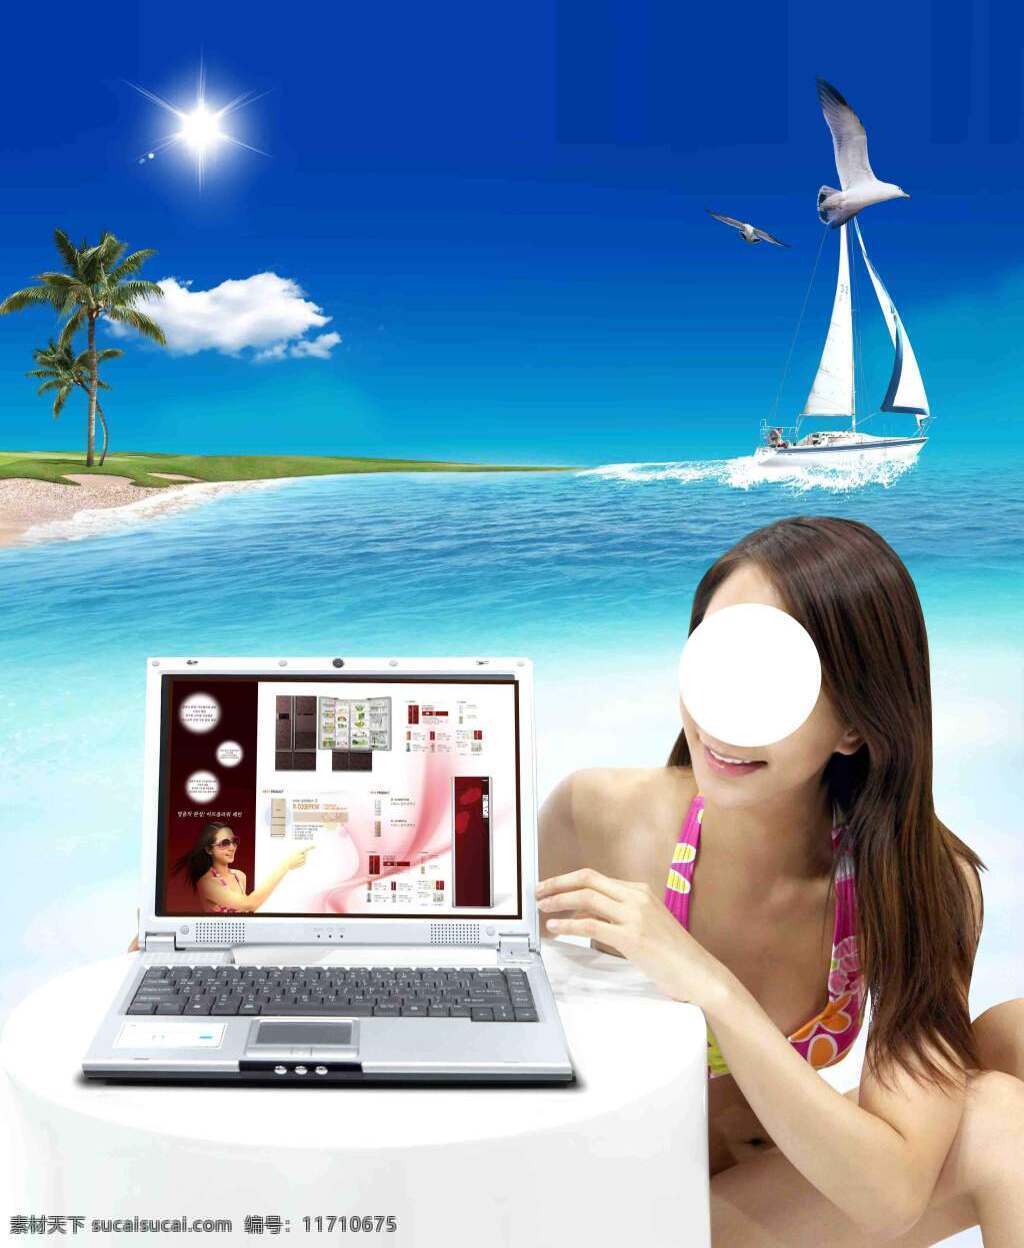 海 灘 休 閒 廣 告 背景 休閒 旅遊 海灘 海鳥 帆船 美女 比基尼 椰子樹 電腦 dm 廣告商品 背景素材 白色